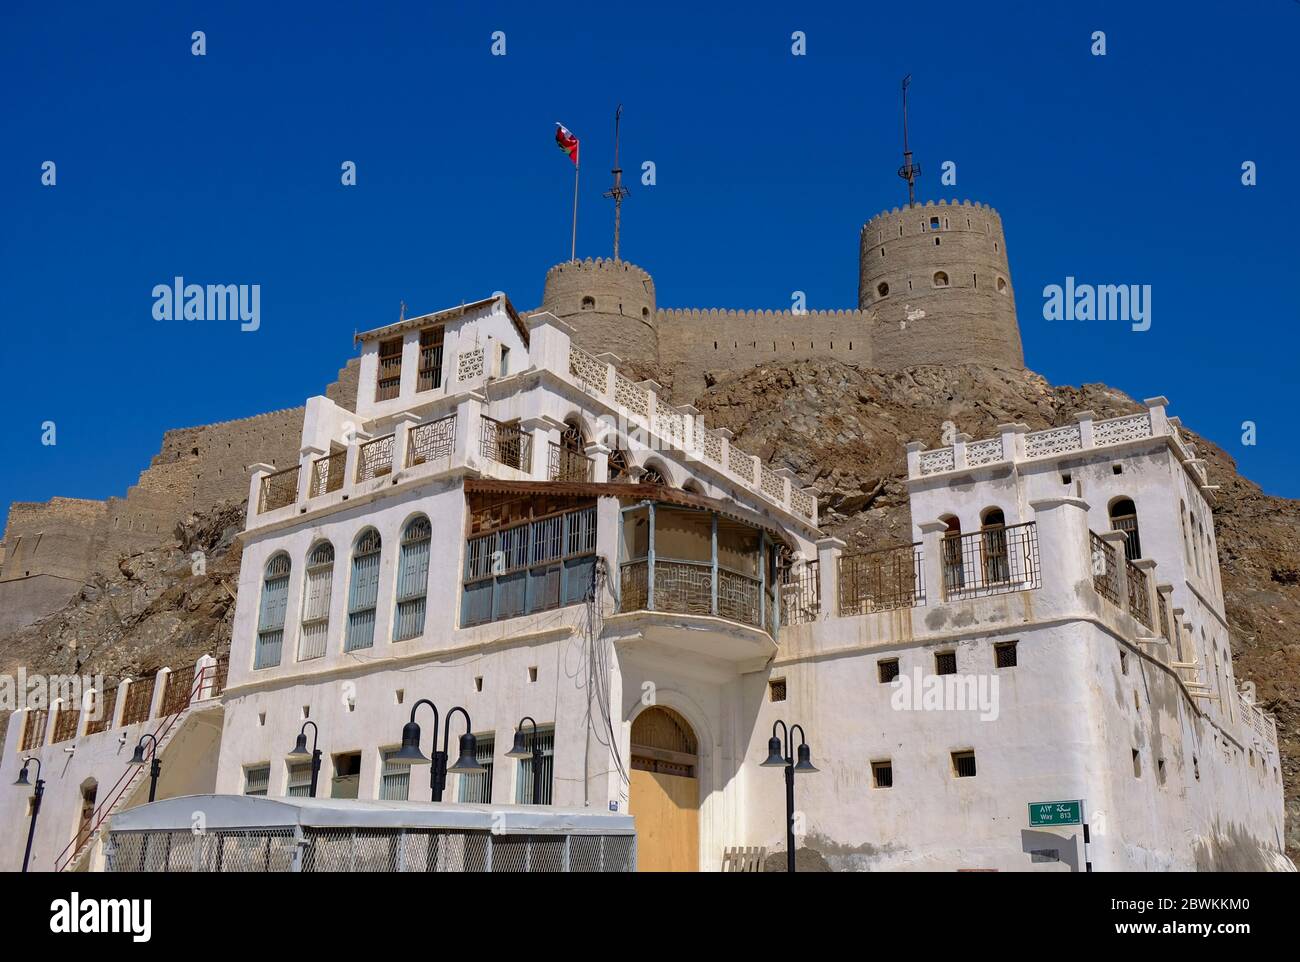 Vue sur une vieille maison et le fort de Mutrah depuis la Corniche, Muscat, Sultanat d'Oman. Banque D'Images